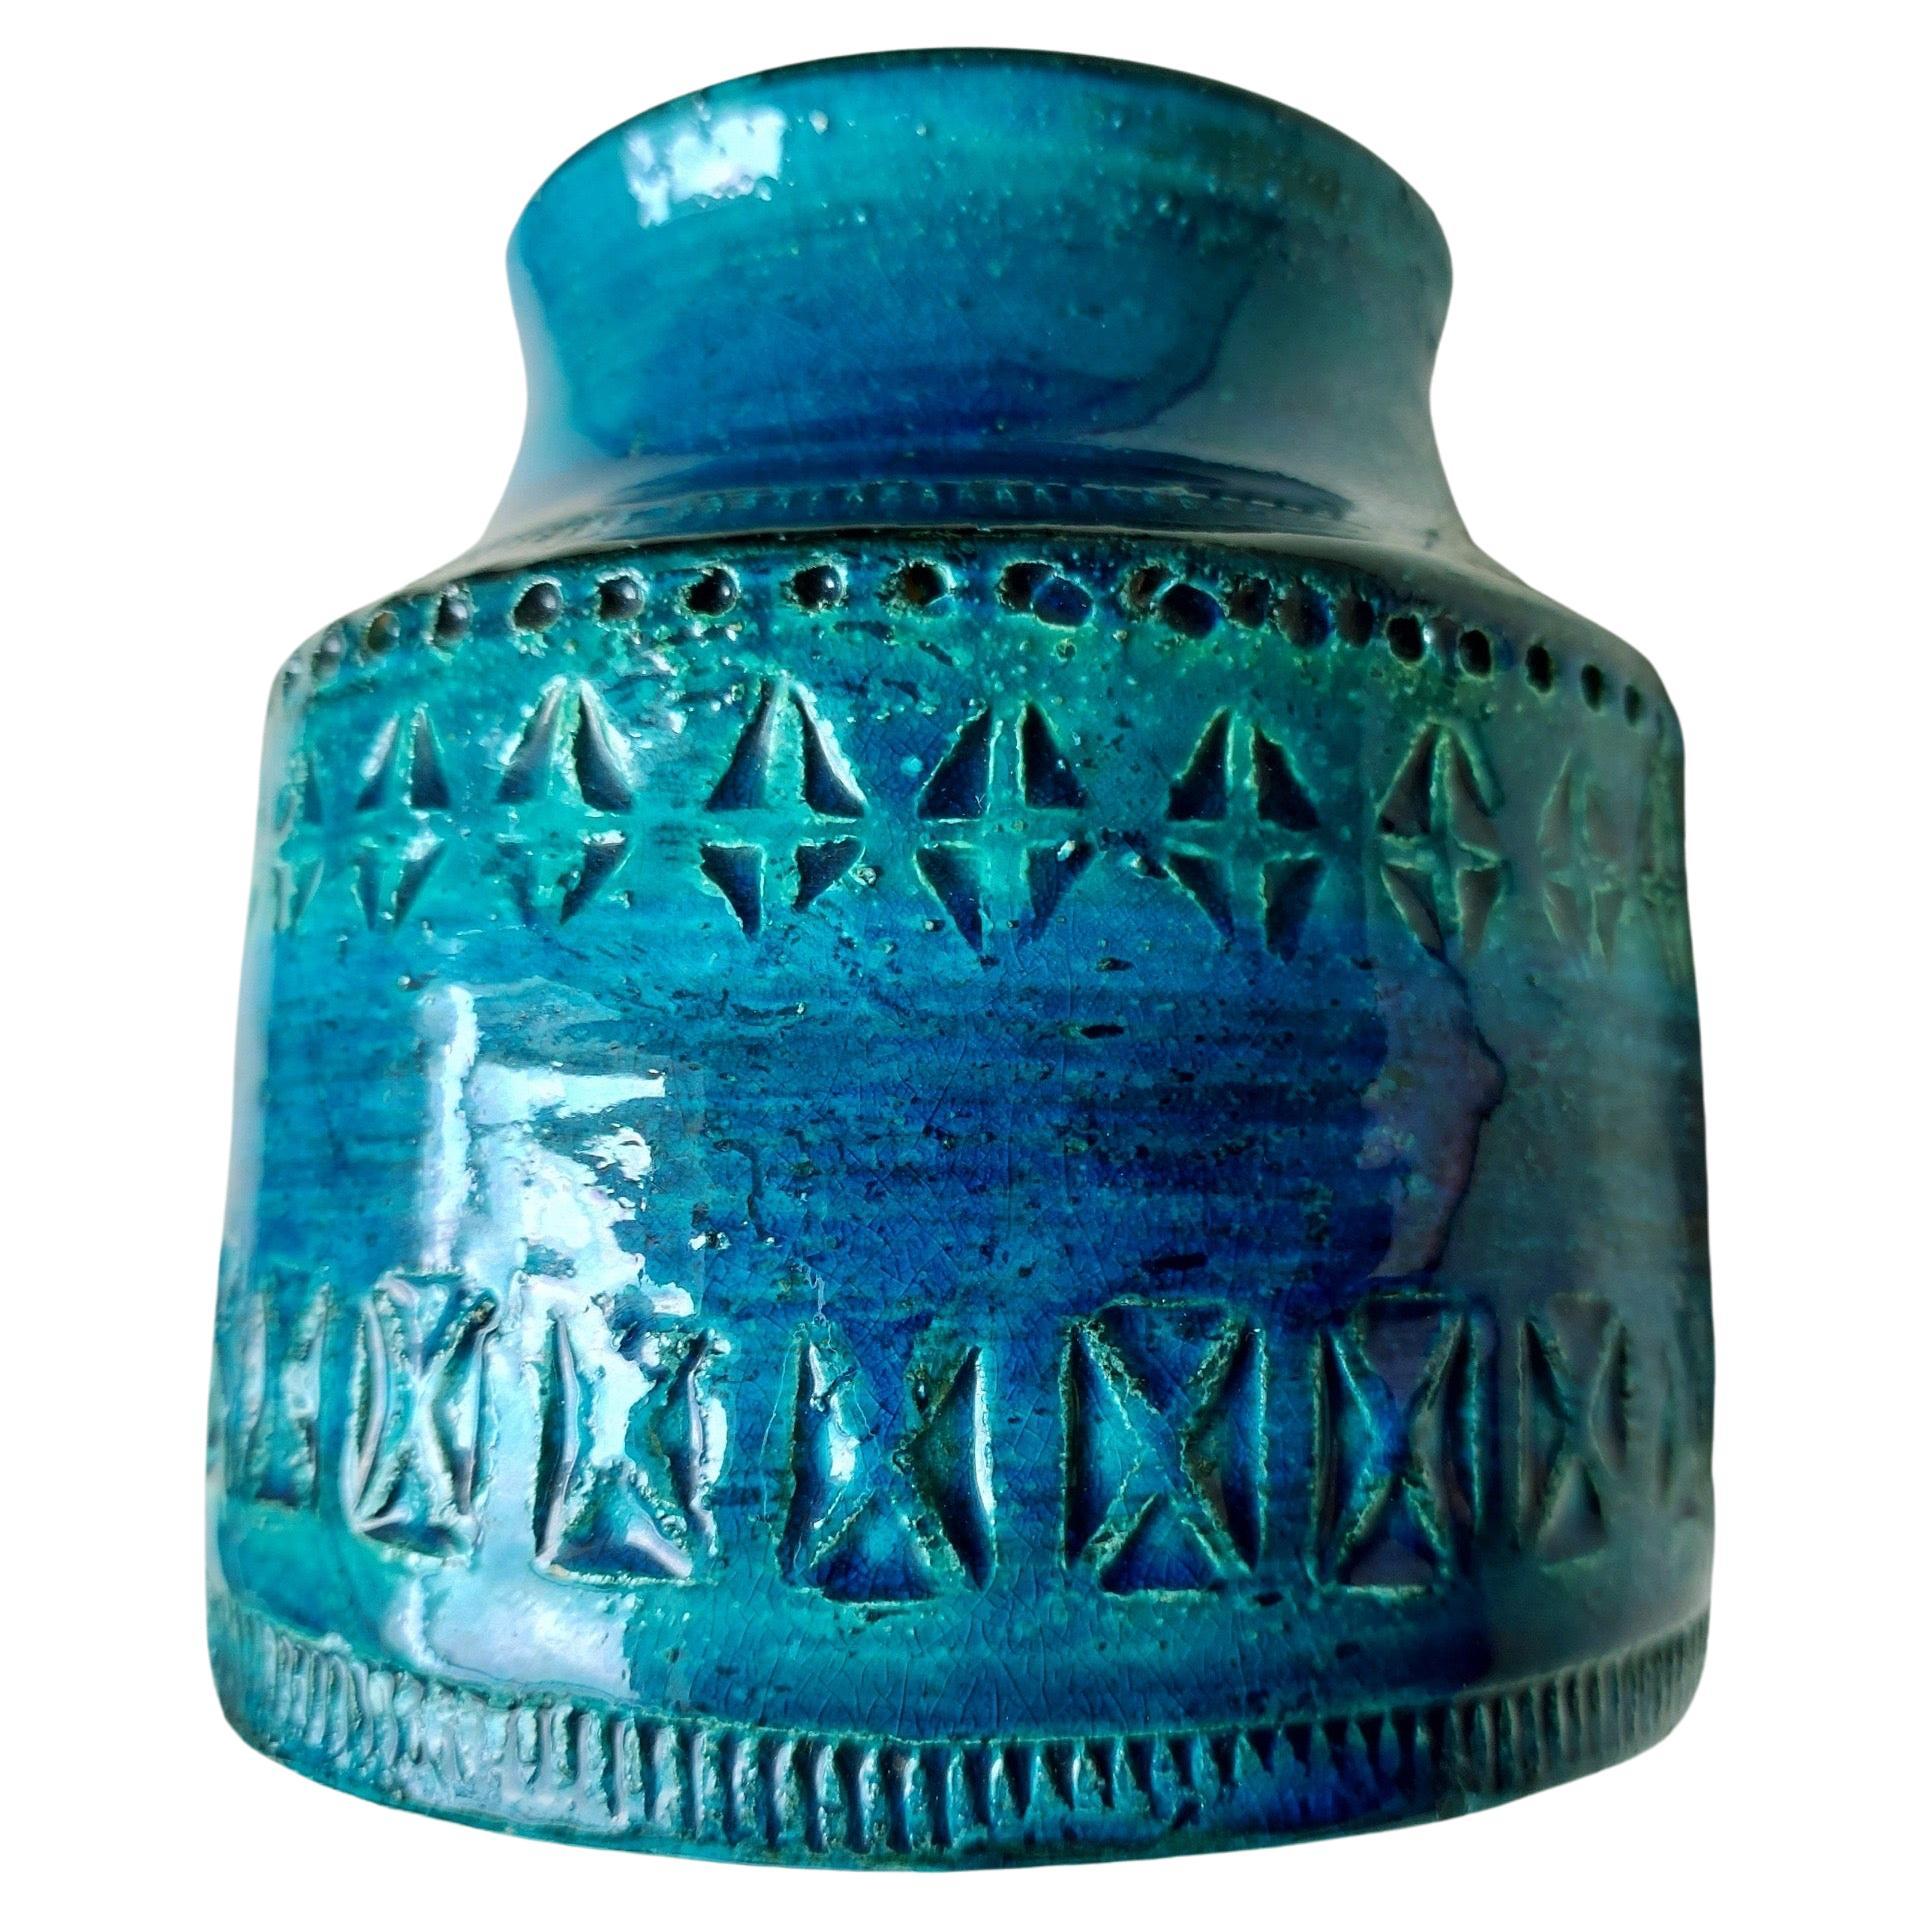 Aldo Londi Vase für Bitossi - • Rimini Blue' Serie 1960er Jahre - • Italien (Deutsch) im Angebot